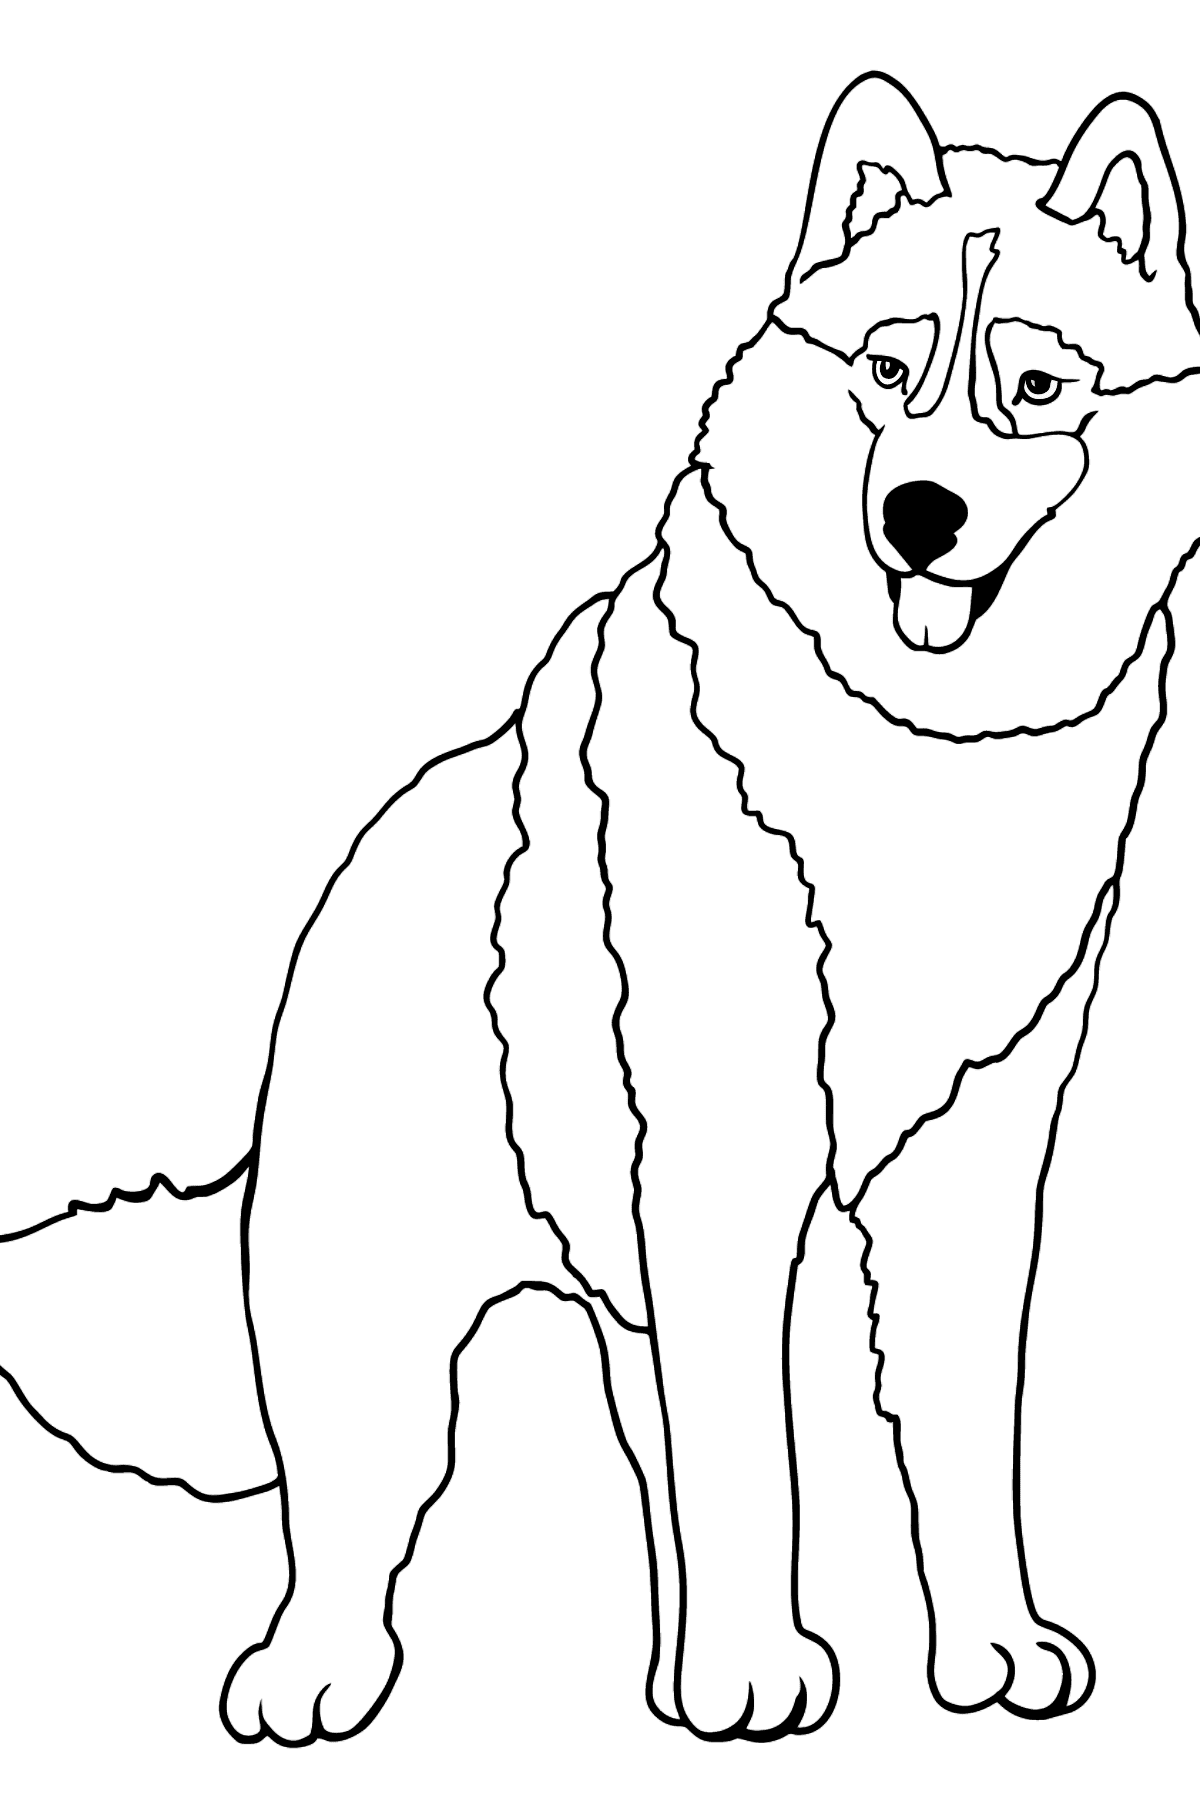 Dibujo de Husky para colorear - Dibujos para Colorear para Niños